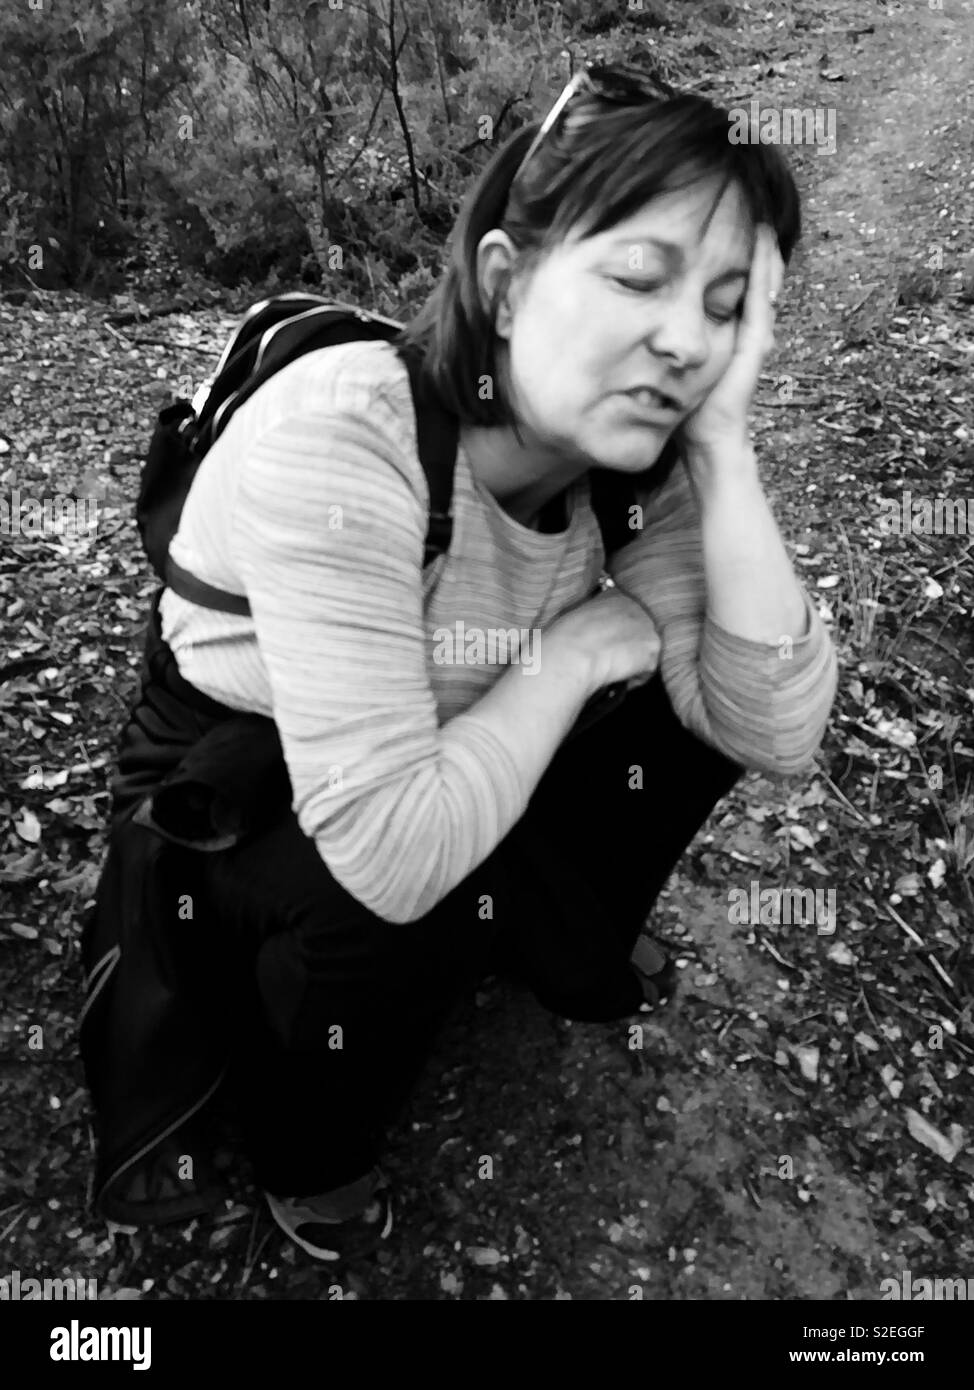 Donna escursionista da soli accovacciato sul terreno cercando stanco ed esausto dopo una lunga giornata di escursione Foto Stock